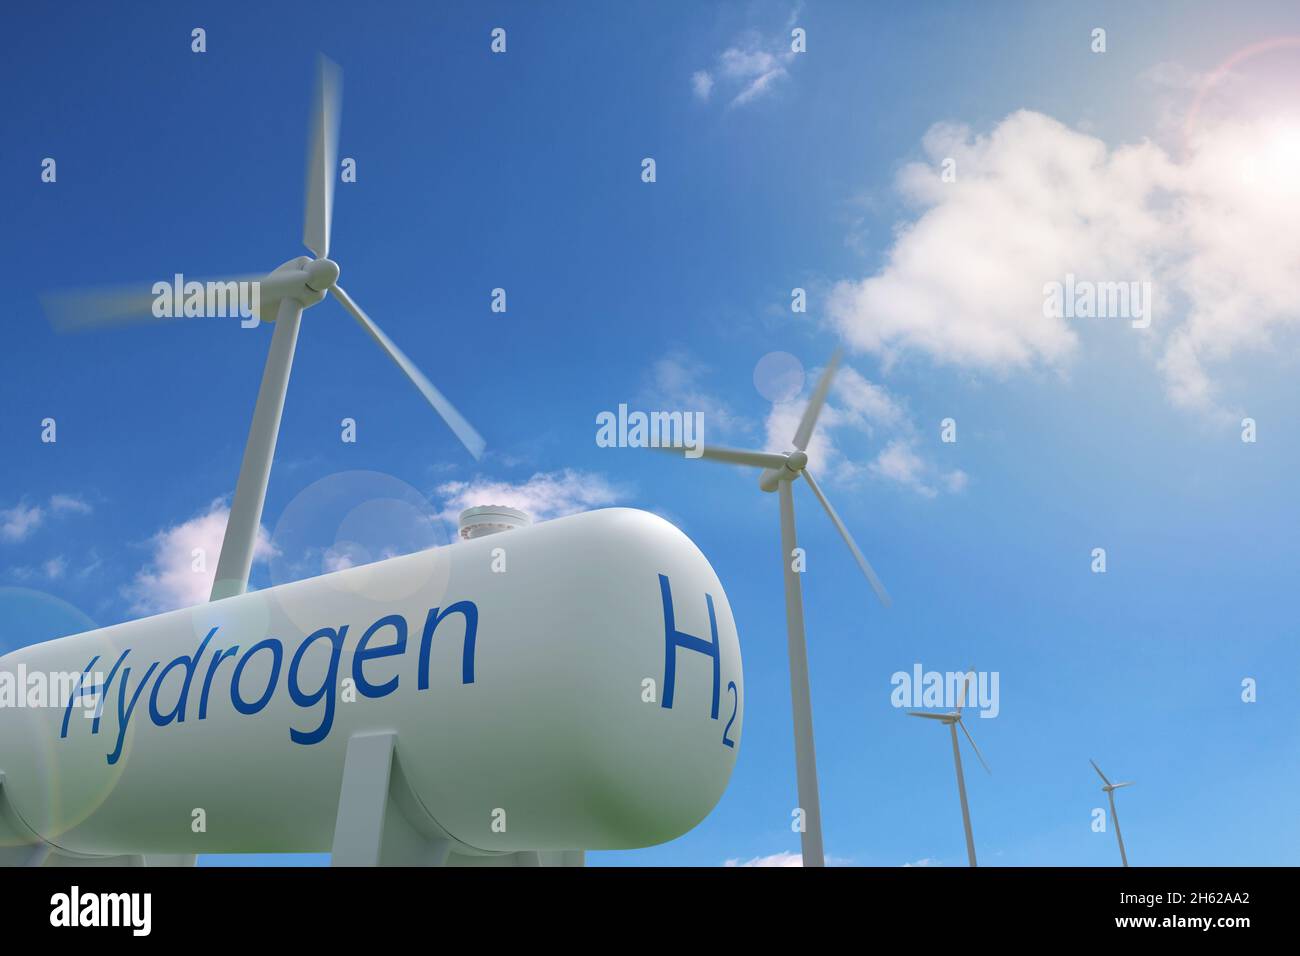 Serbatoio di idrogeno e mulini a vento su sfondo cielo blu. Concetto di energia sostenibile ed ecologica. illustrazione 3d. Foto Stock